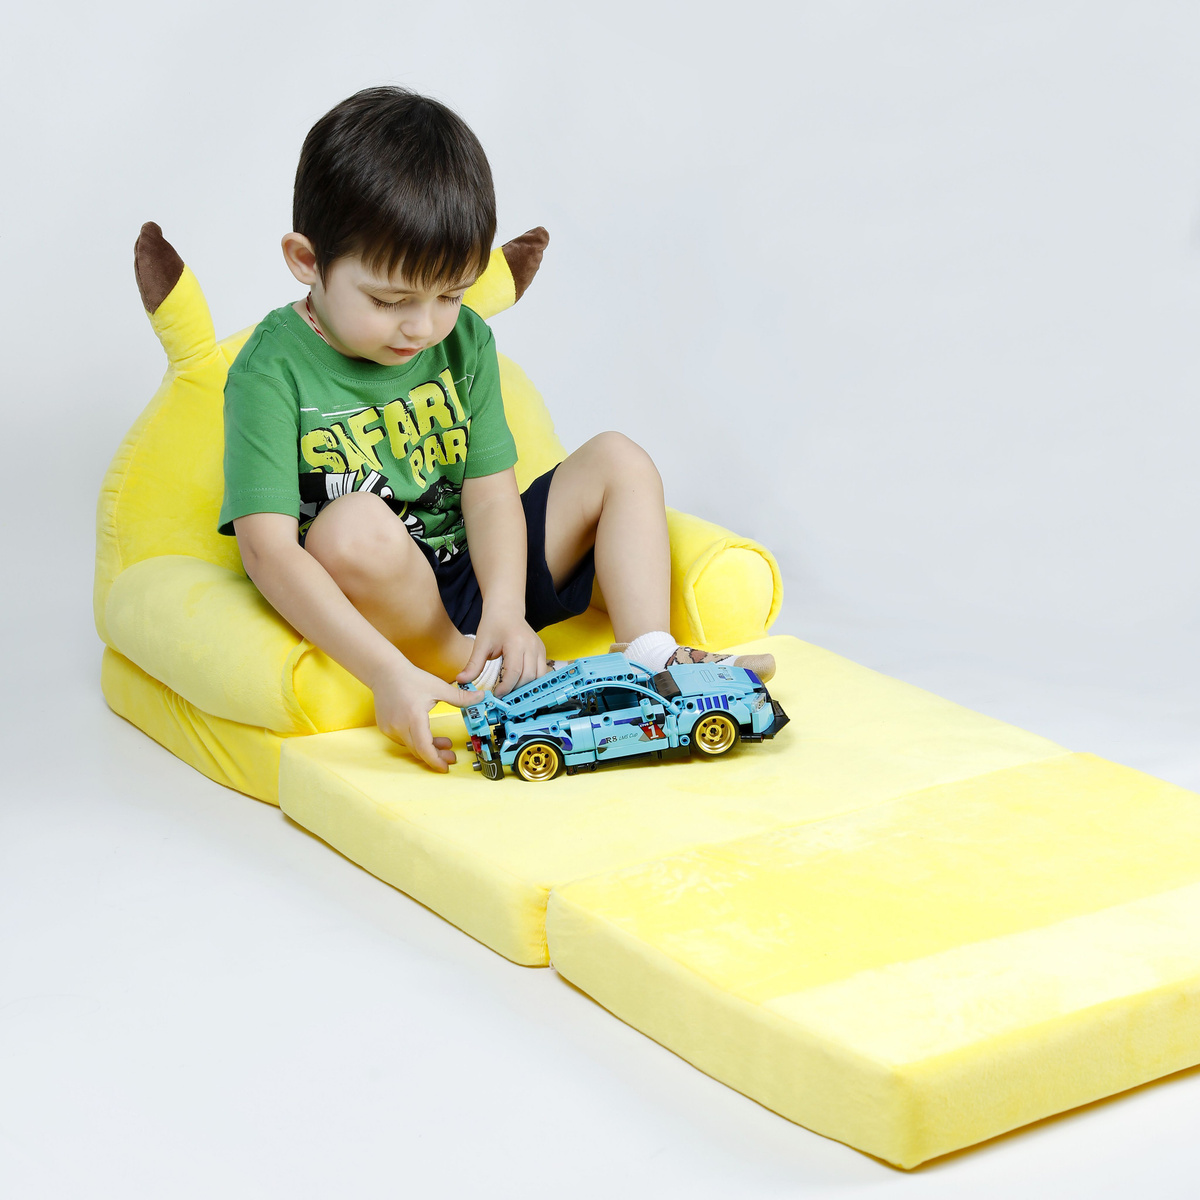 Комфортное мягкое кресло, которое легко превращается в небольшую кровать.